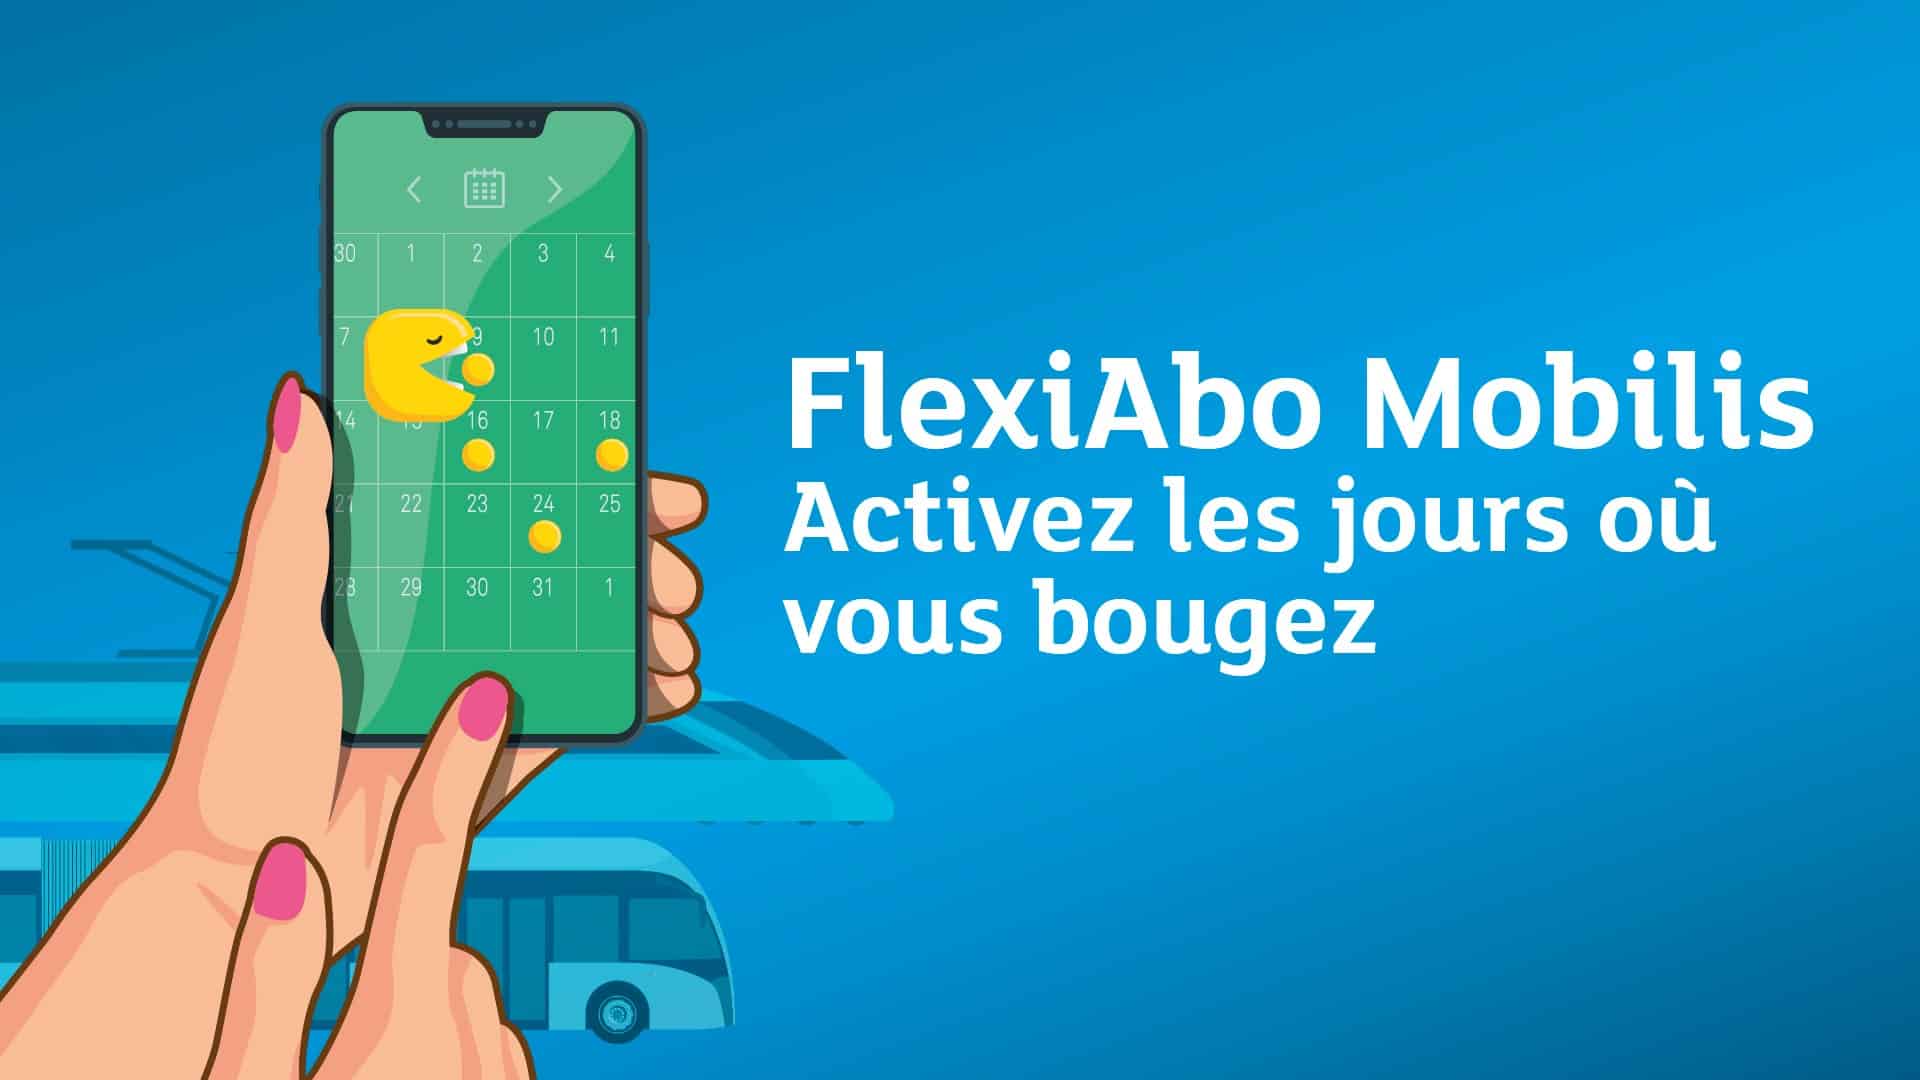 FlexiAbo Mobilis